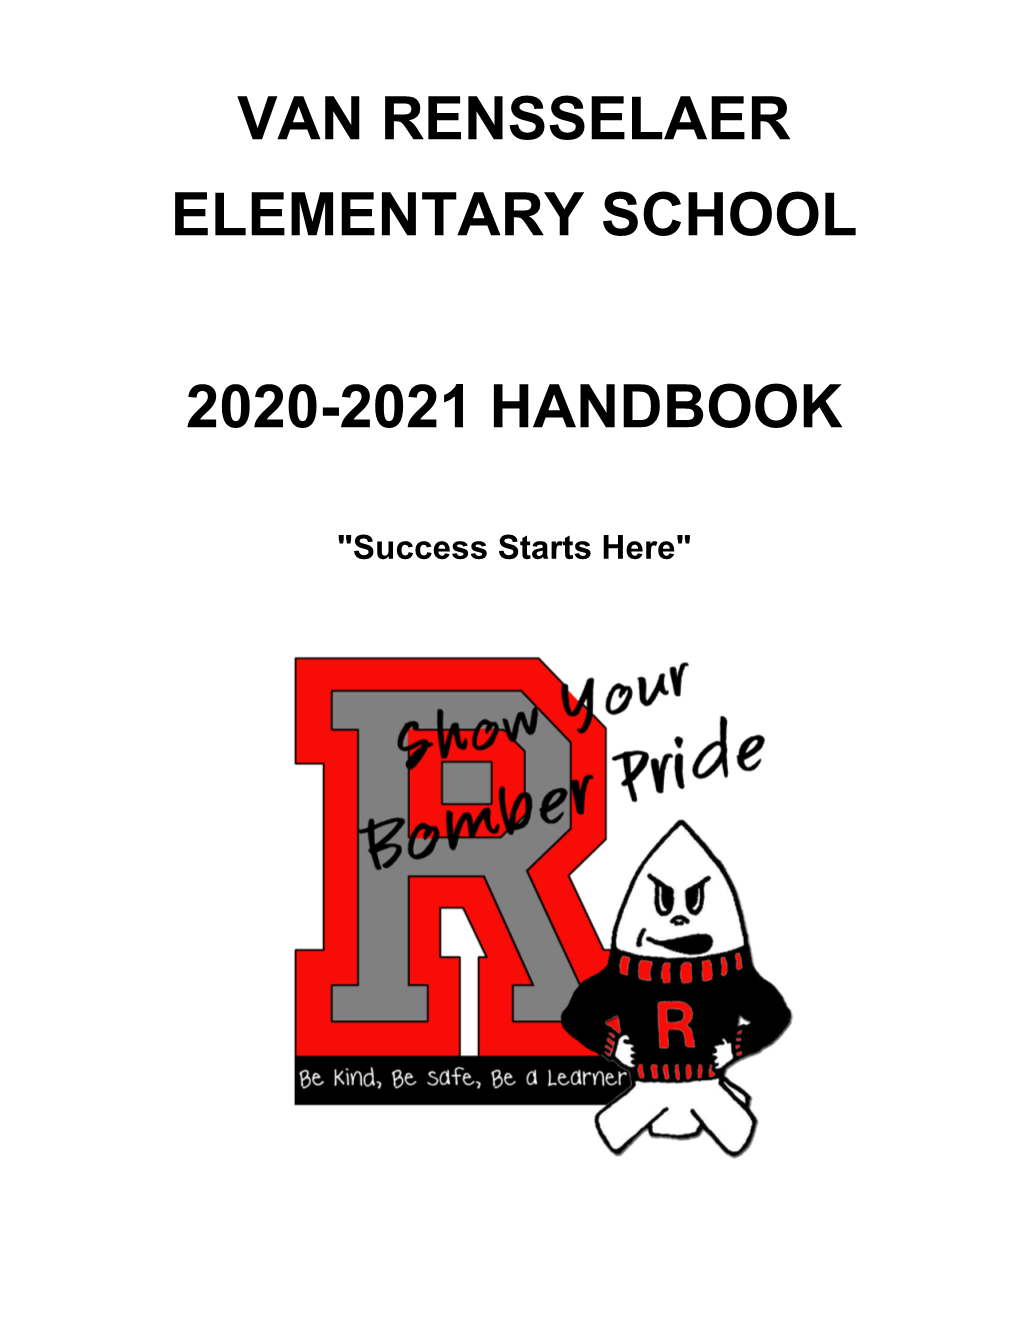 Van Rensselaer Elementary School 2020-2021 Handbook